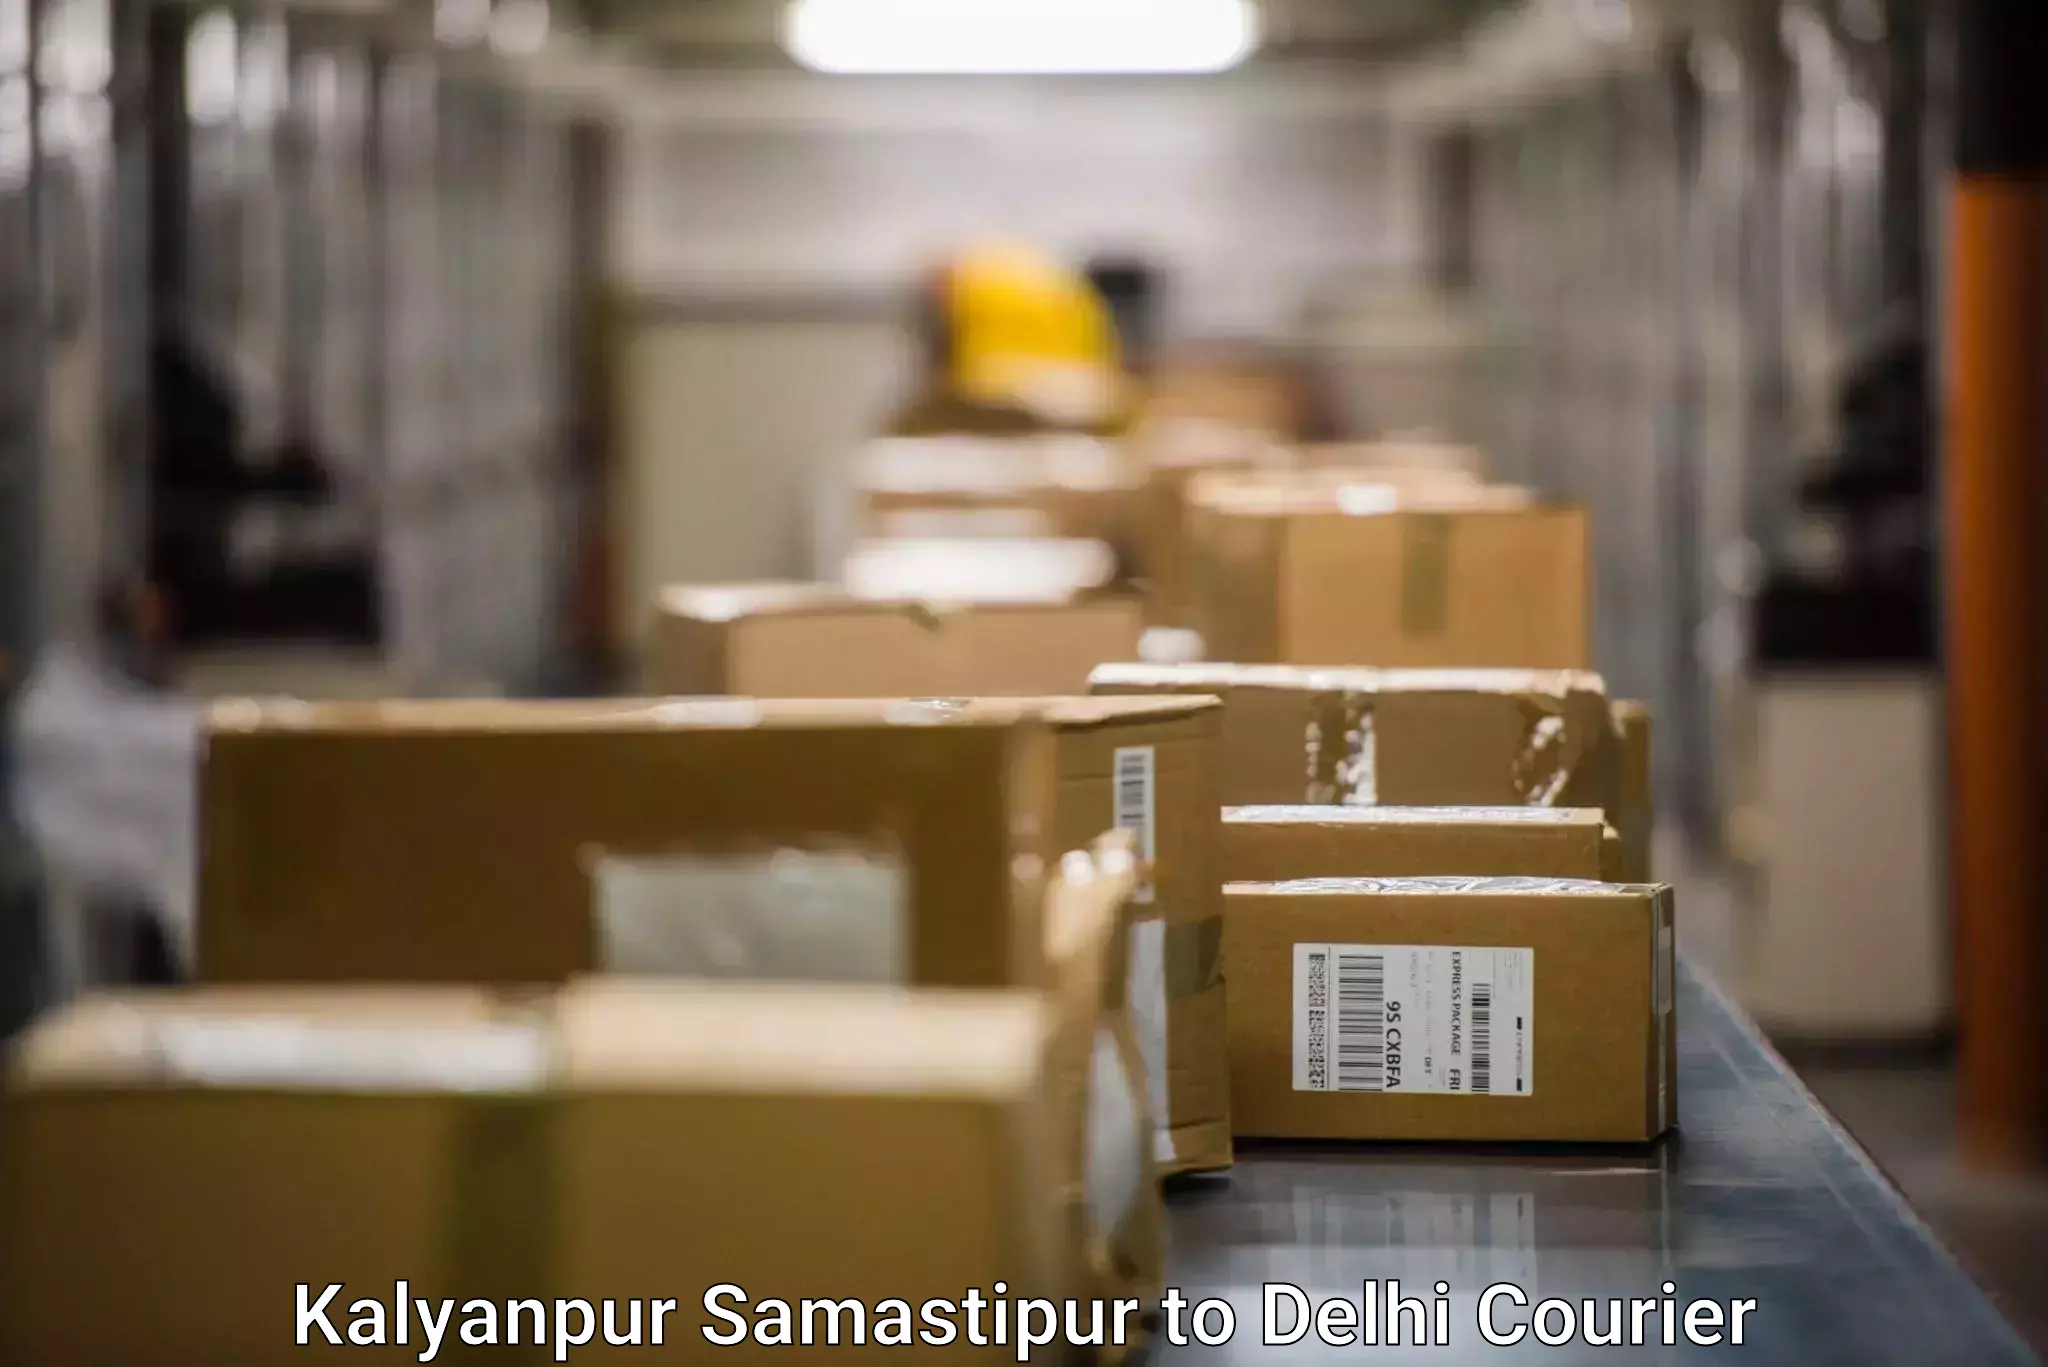 Express mail service Kalyanpur Samastipur to NCR